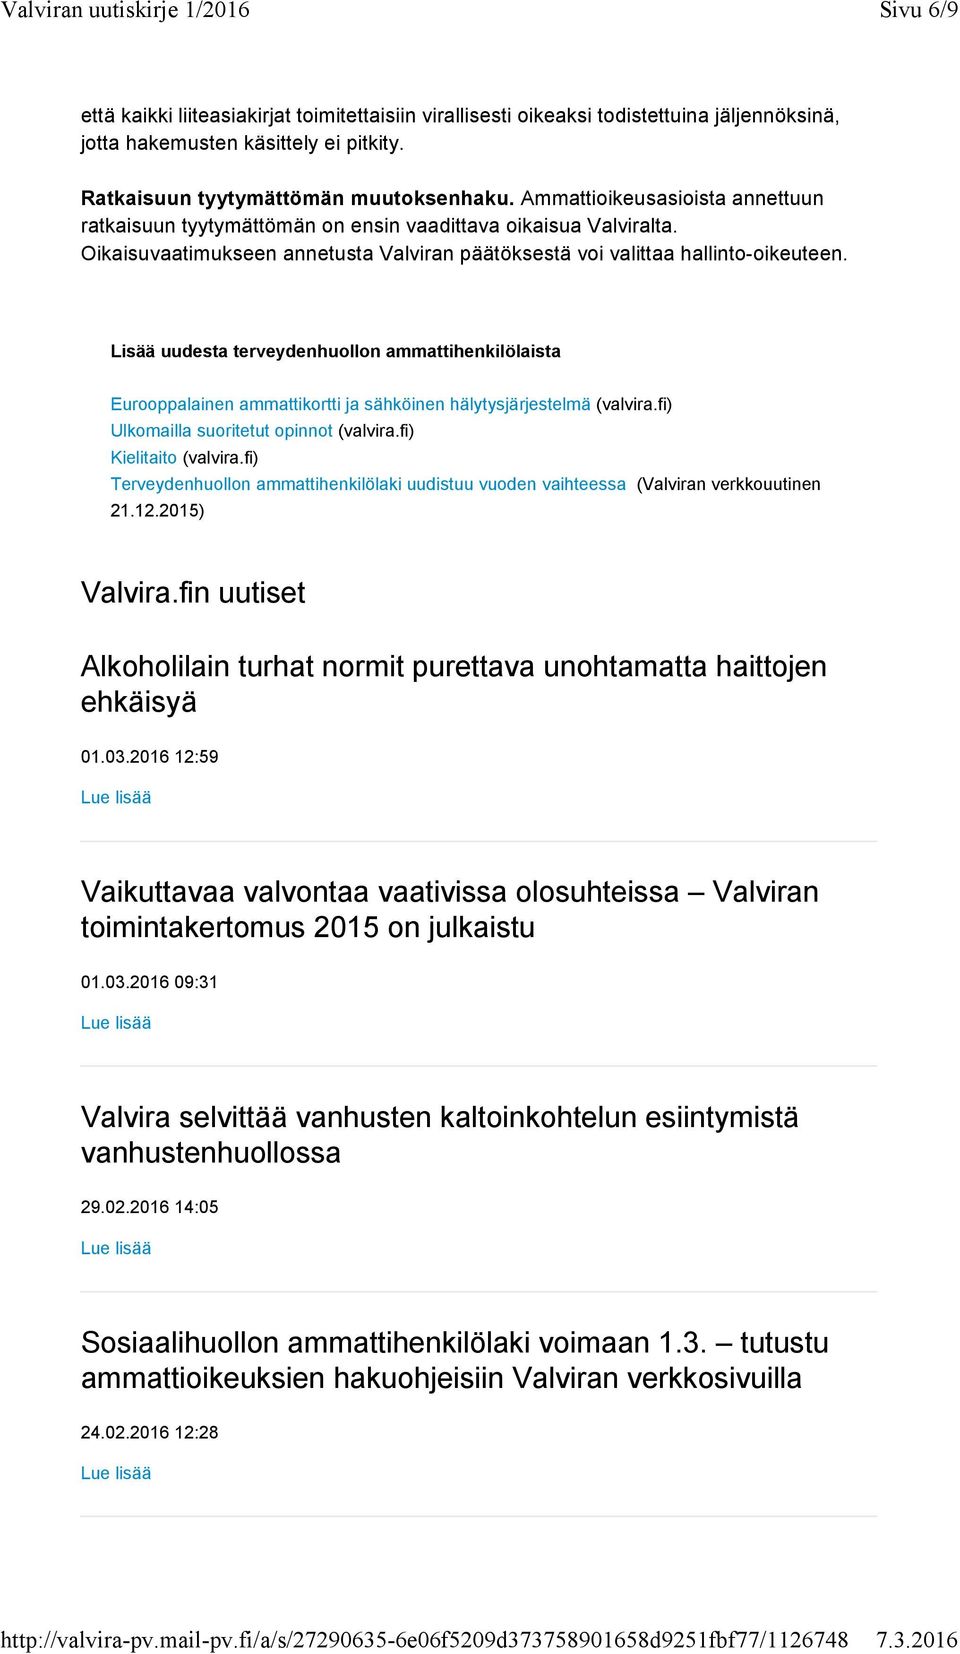 Lisää uudesta terveydenhuollon ammattihenkilölaista Eurooppalainen ammattikortti ja sähköinen hälytysjärjestelmä (valvira.fi) Ulkomailla suoritetut opinnot (valvira.fi) Kielitaito (valvira.